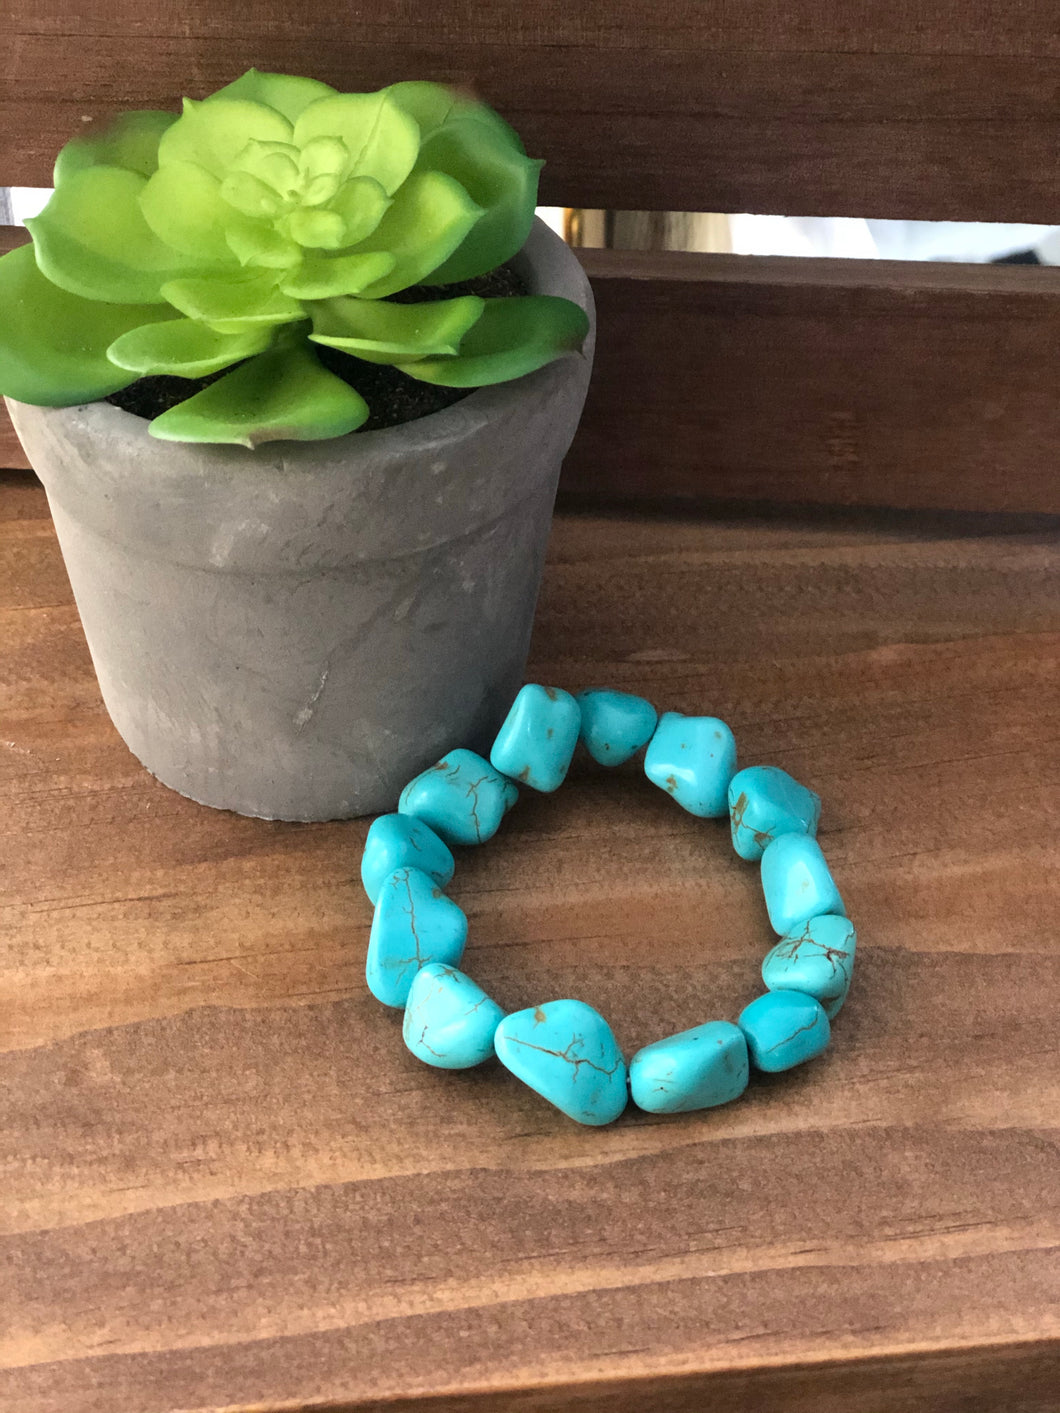 Chunky Turquoise Stone Bracelet